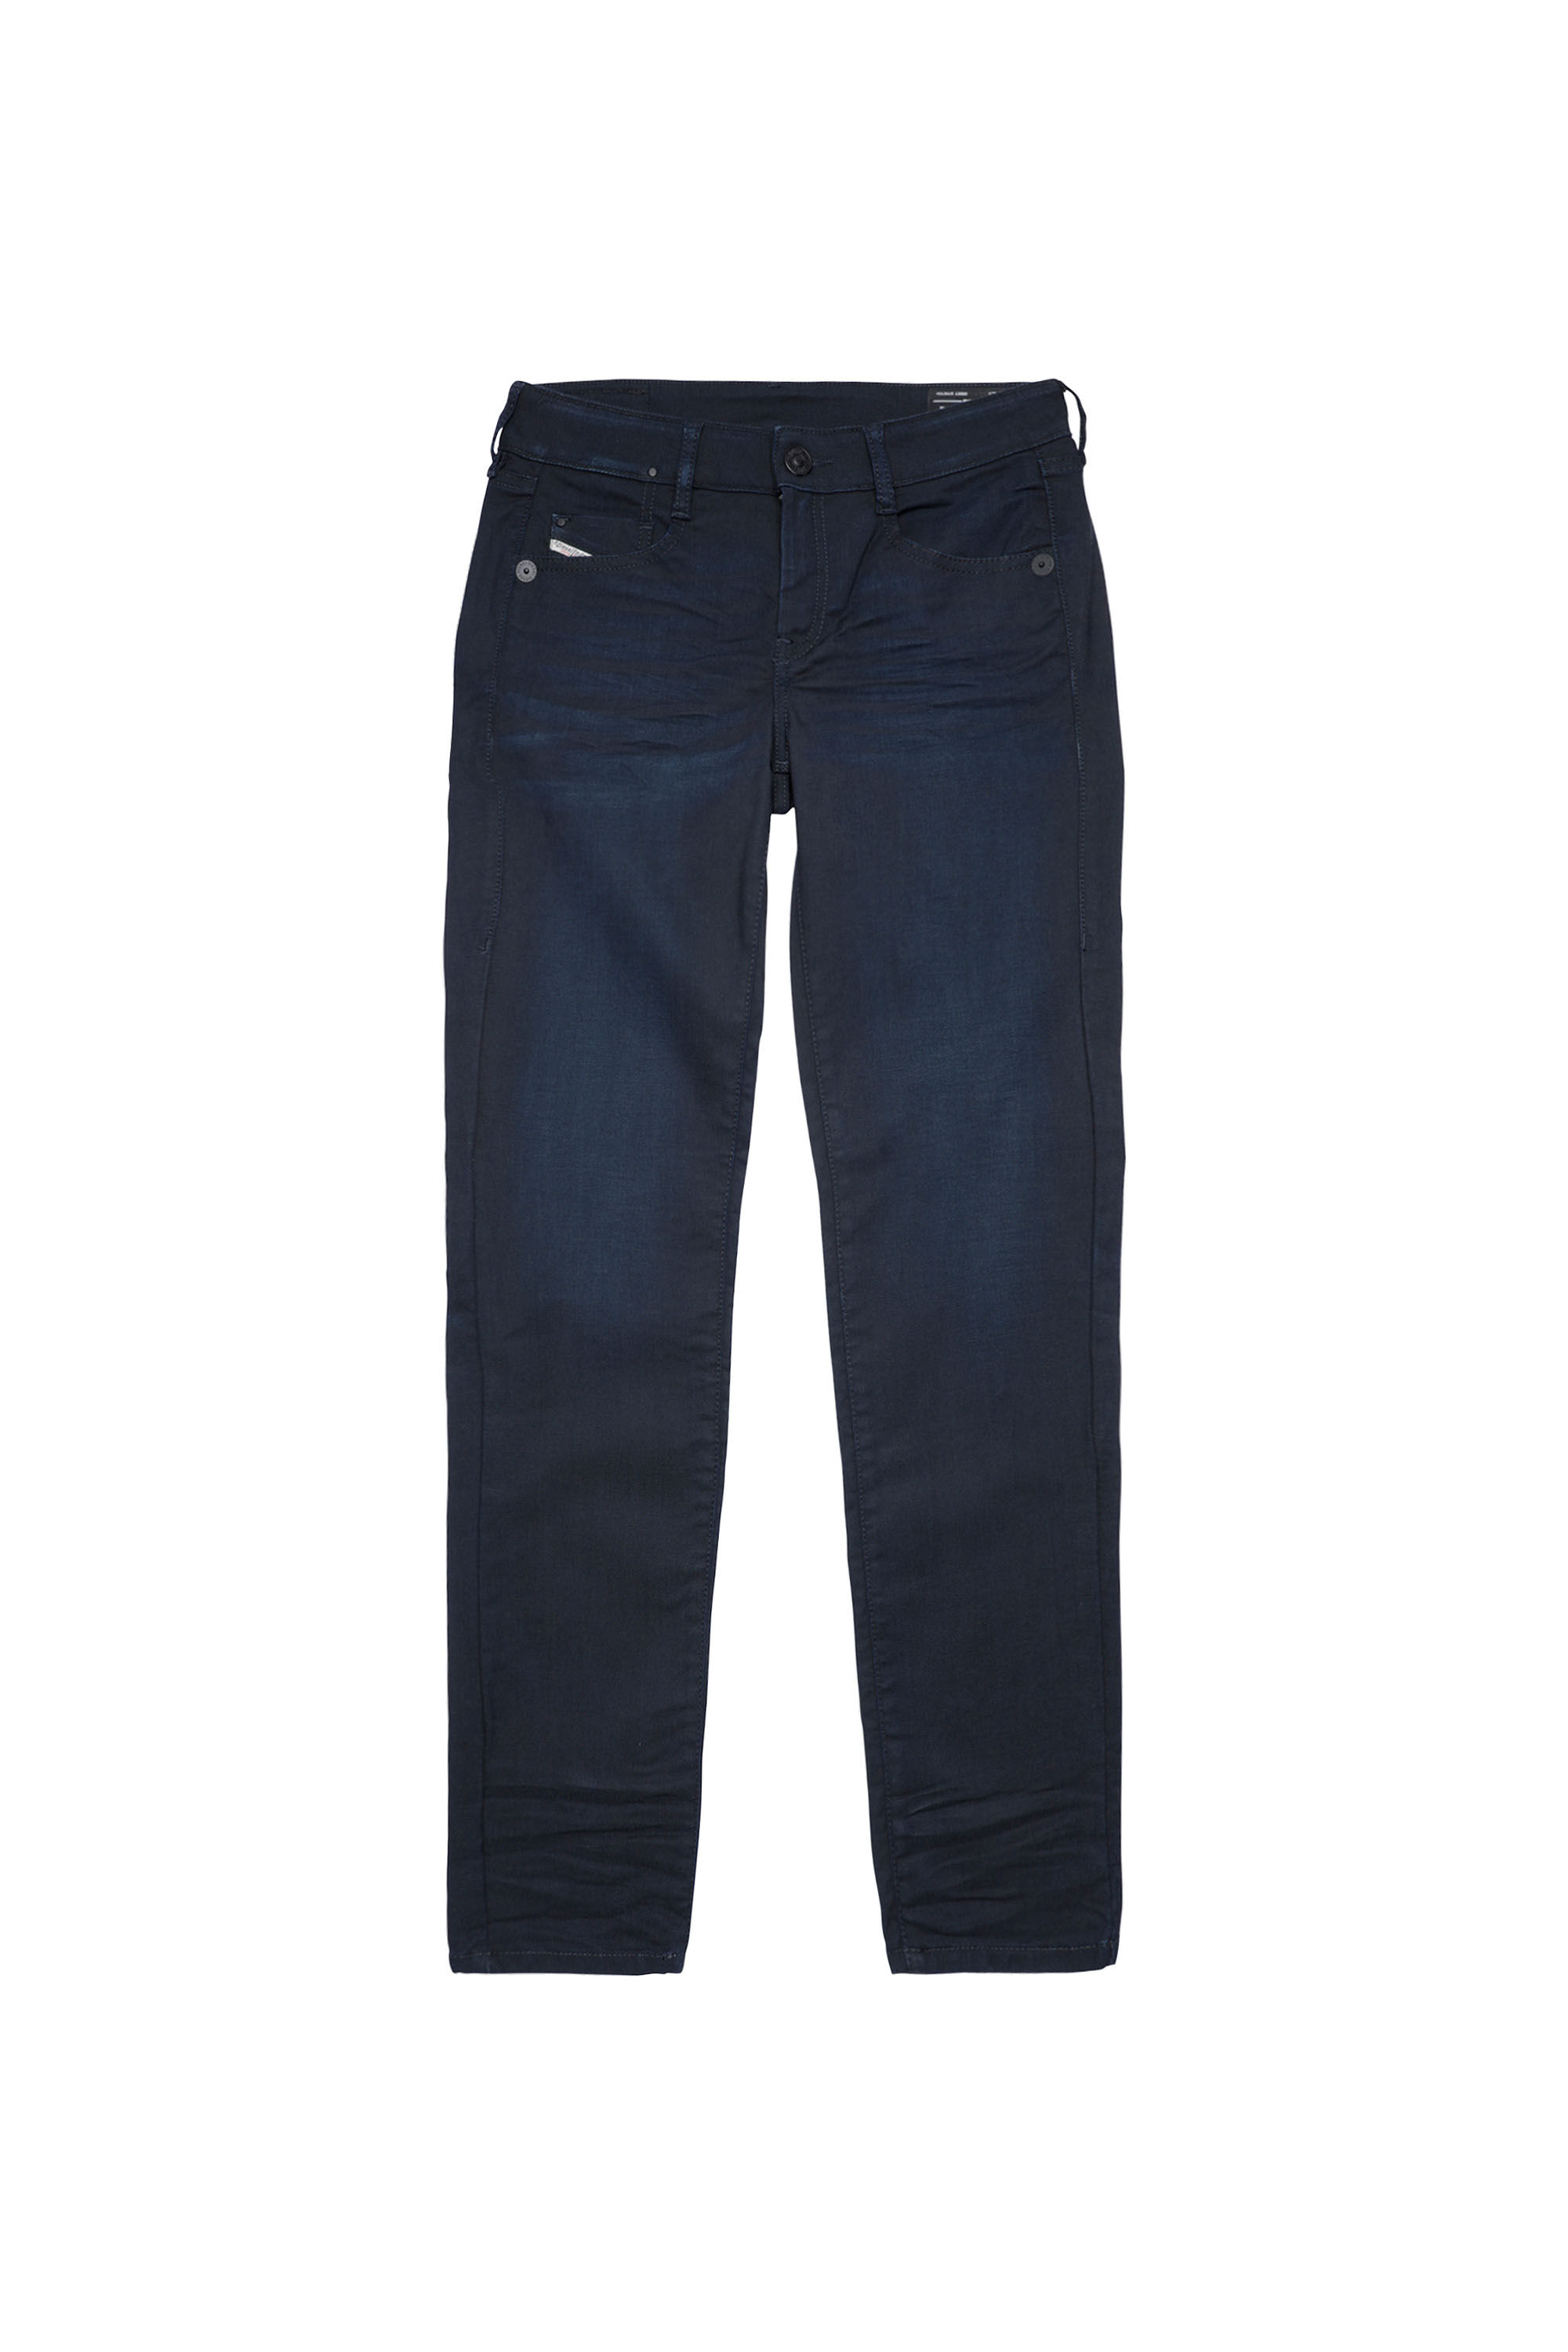 Diesel - D-Ollies JoggJeans® 069XY Slim, Dark Blue - Image 2